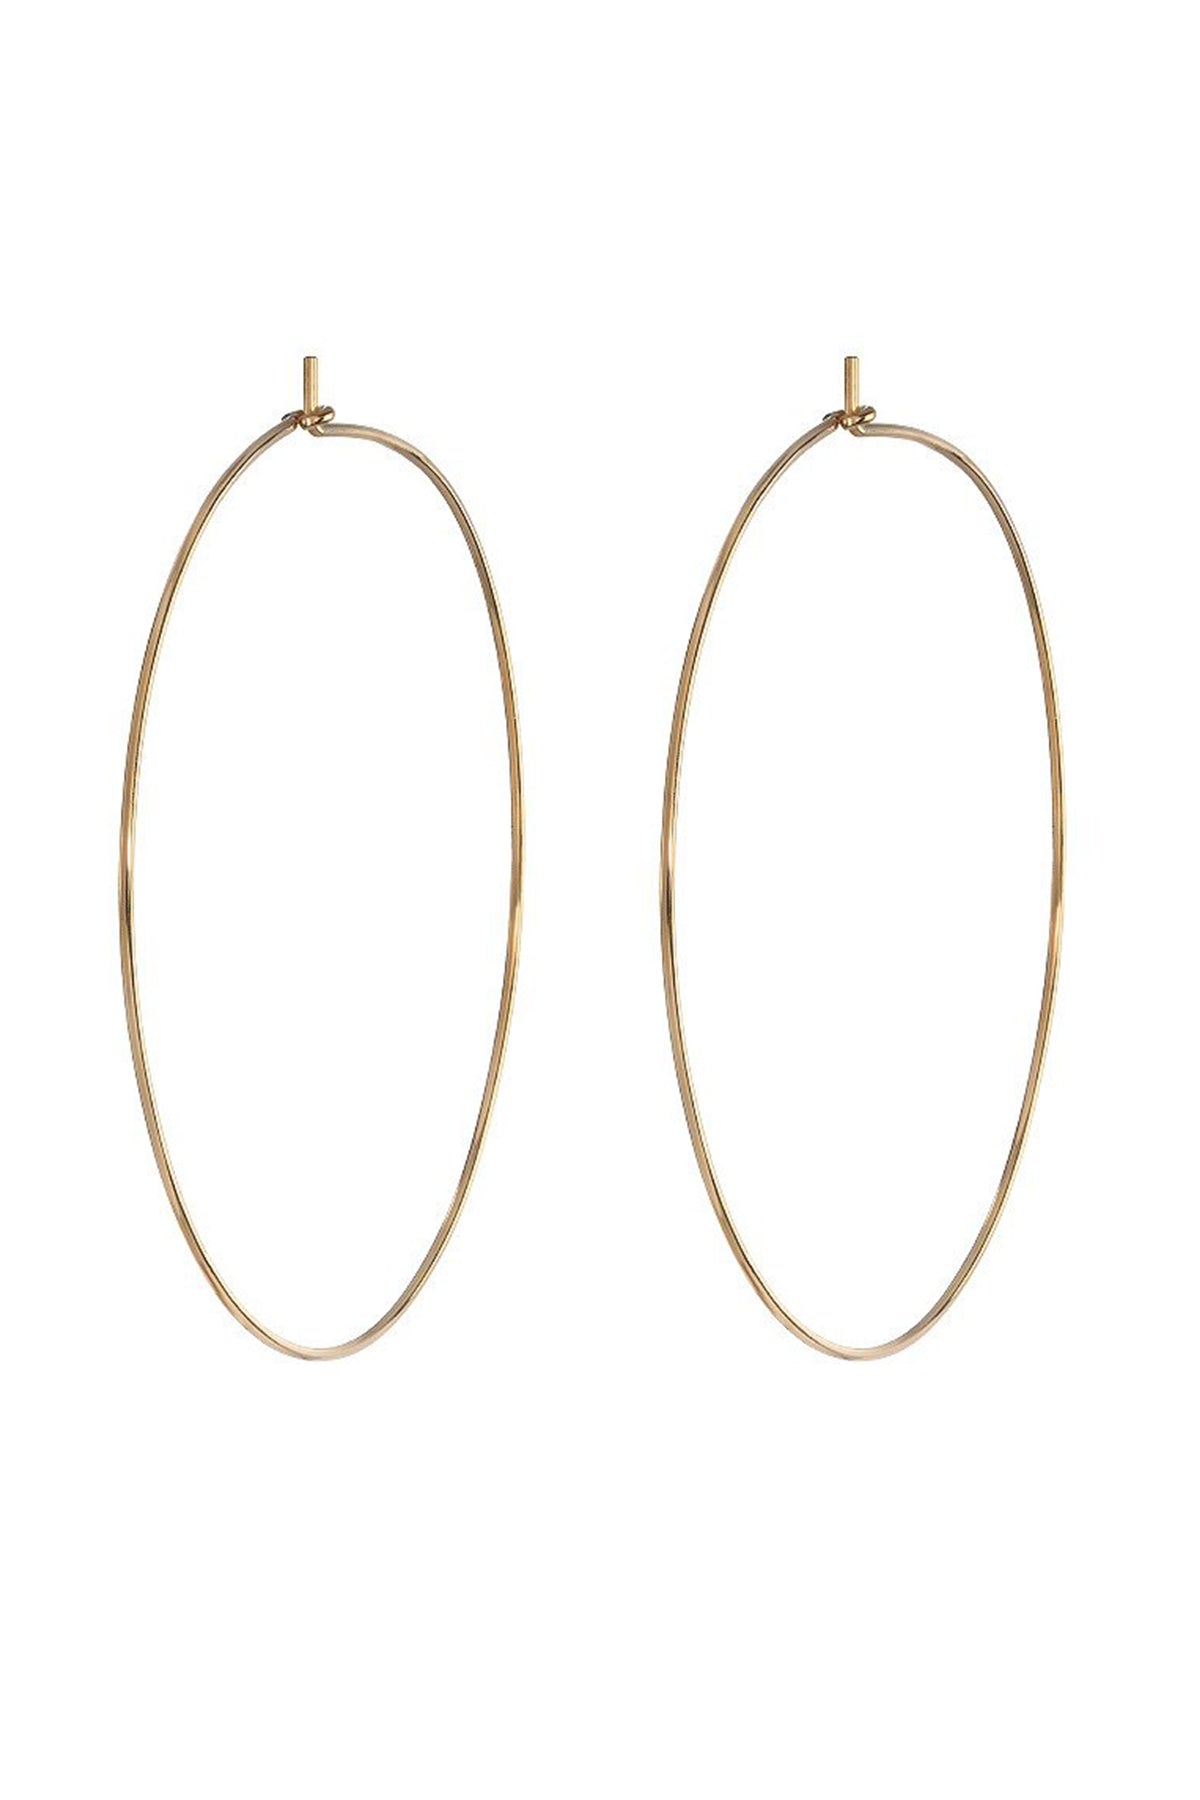   Large Hoop Earrings by Bychari Gold 